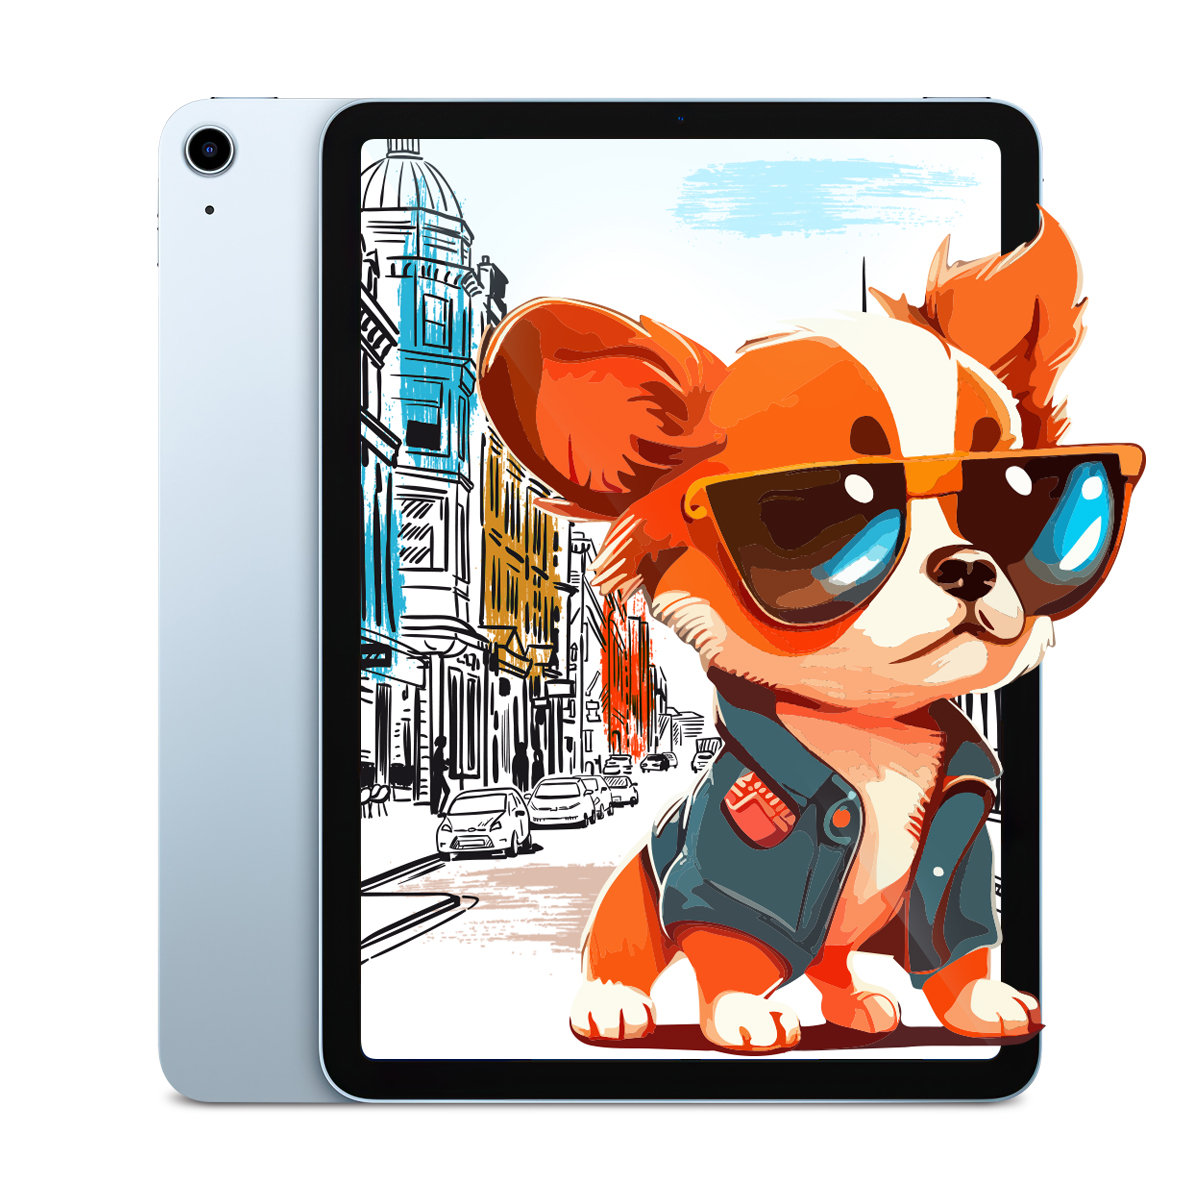 Combo iPad Air 2 16GB Gris (Reacondicionado Grado A) + Audifonos para iPad  + Smart Pencil, Apple